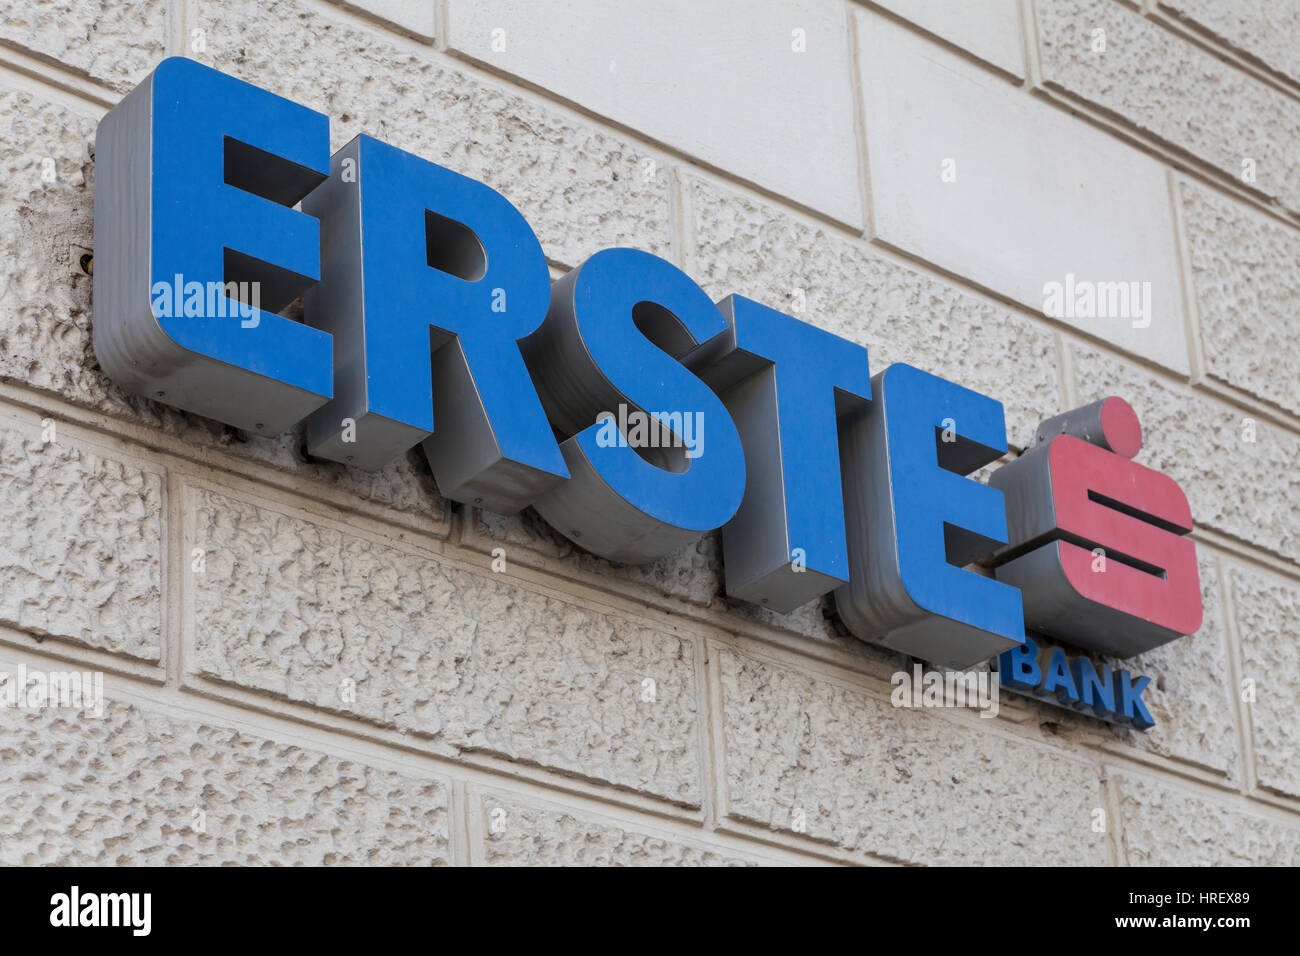 VIENNA, AUSTRIA, DEC. 7th, 2017 - ERSTE SPARKASSE è il secondo grande leader consumatori bank in Austria con filiali allover Central Eastern Europe Foto Stock